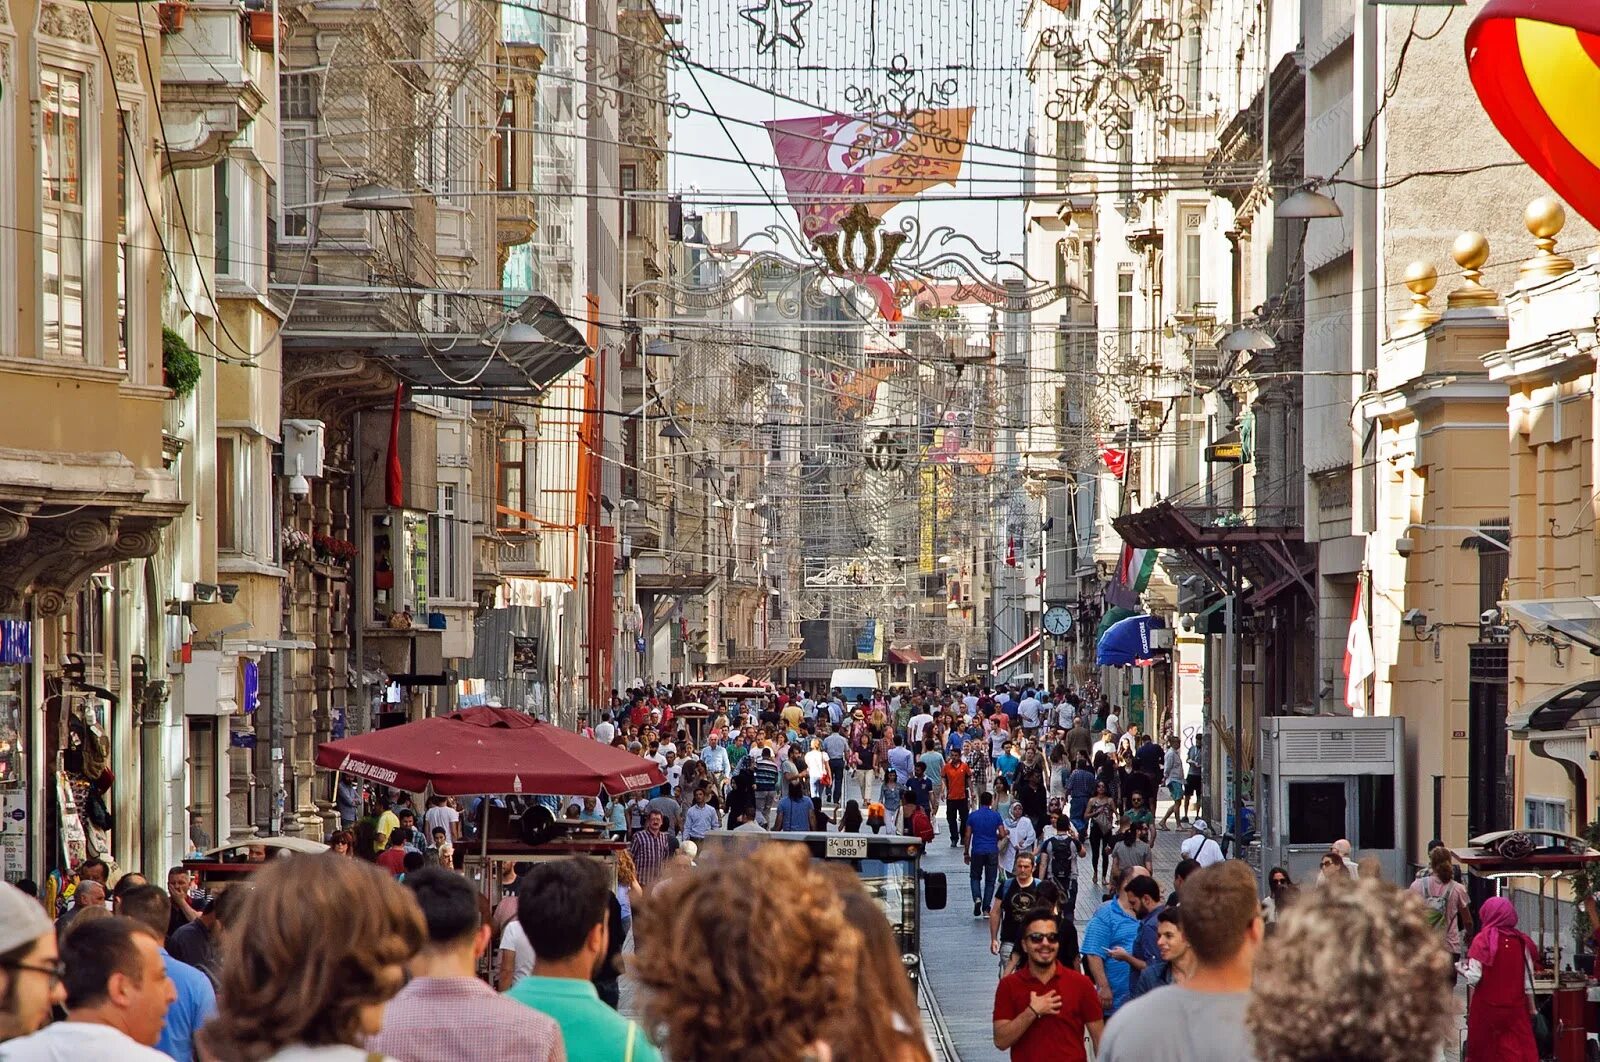 Истикляль. Улица Истикляль в Стамбуле. Истикляль Джаддеси. Площадь Таксим и улица Истикляль. Istiklal Caddesi или улица Истикляль.